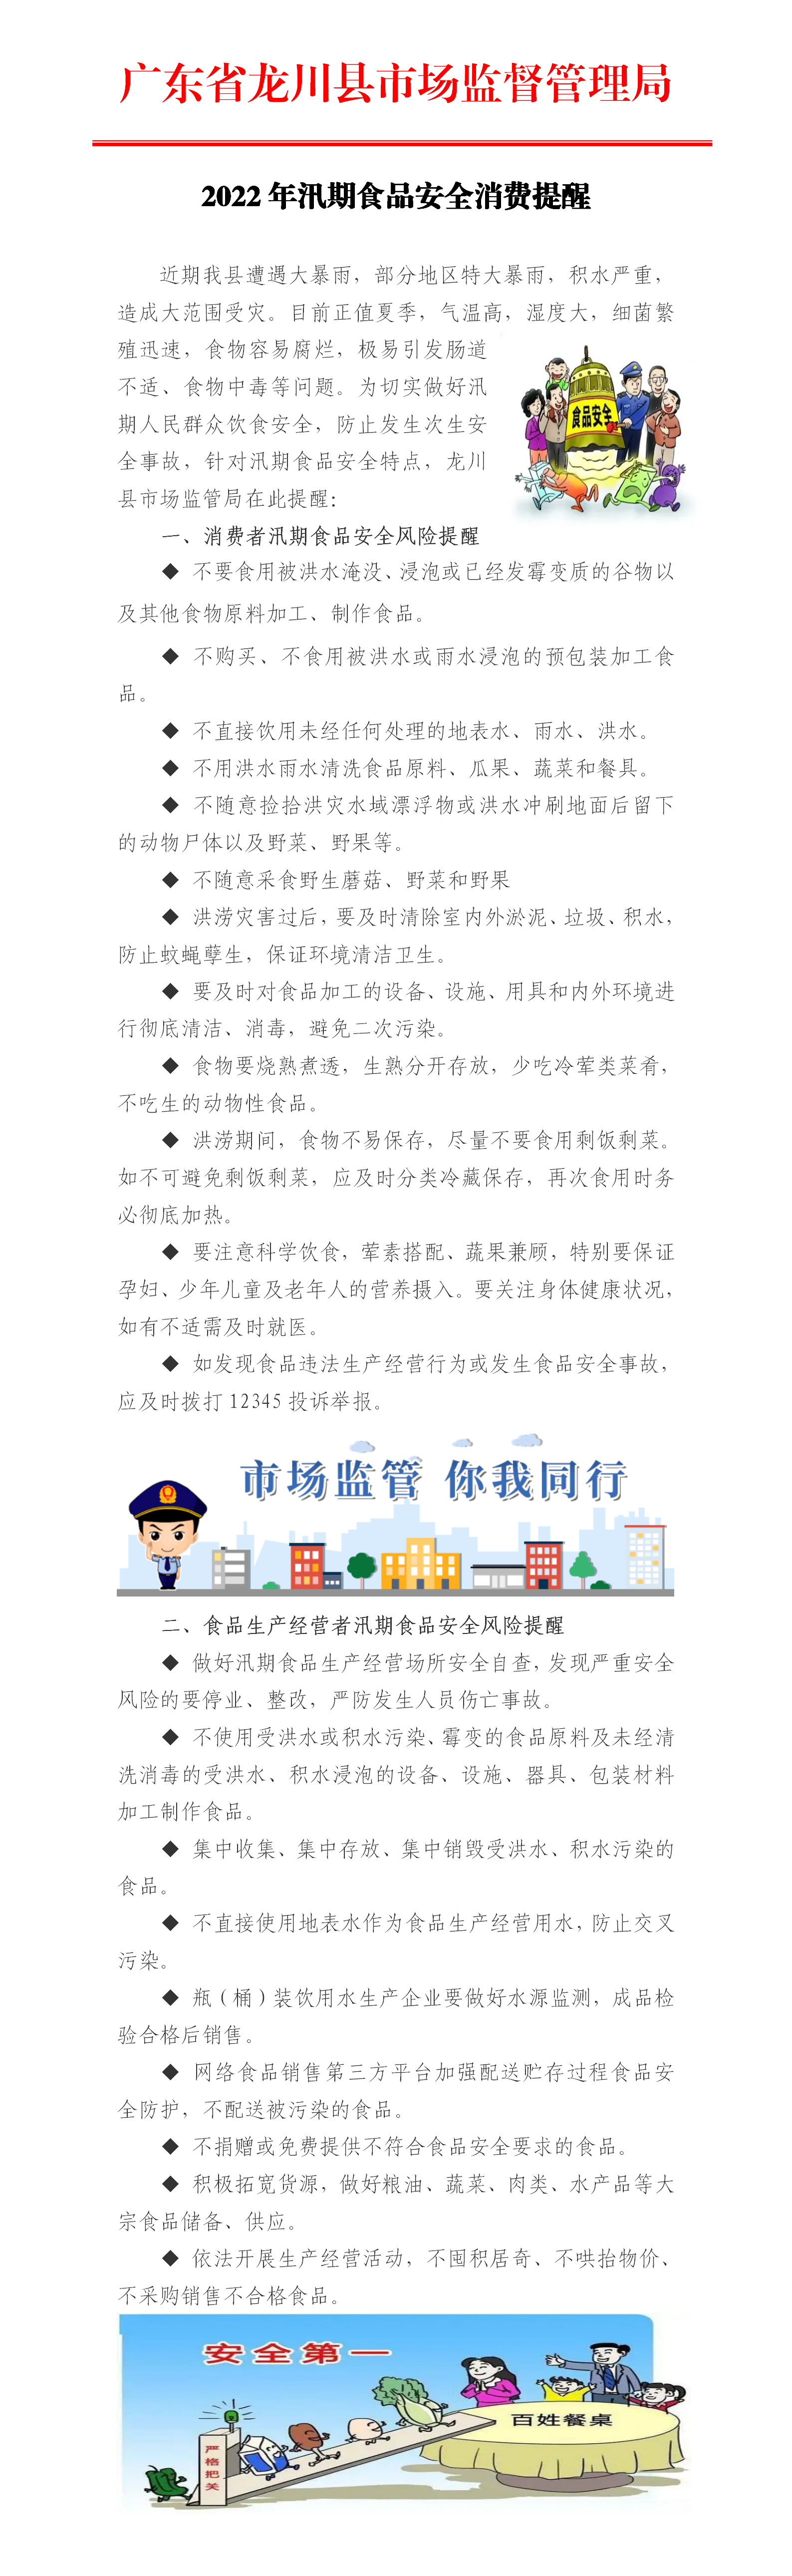 广东省龙川县市场监督管理局2022年汛期食品安全消费提醒_01(1).png